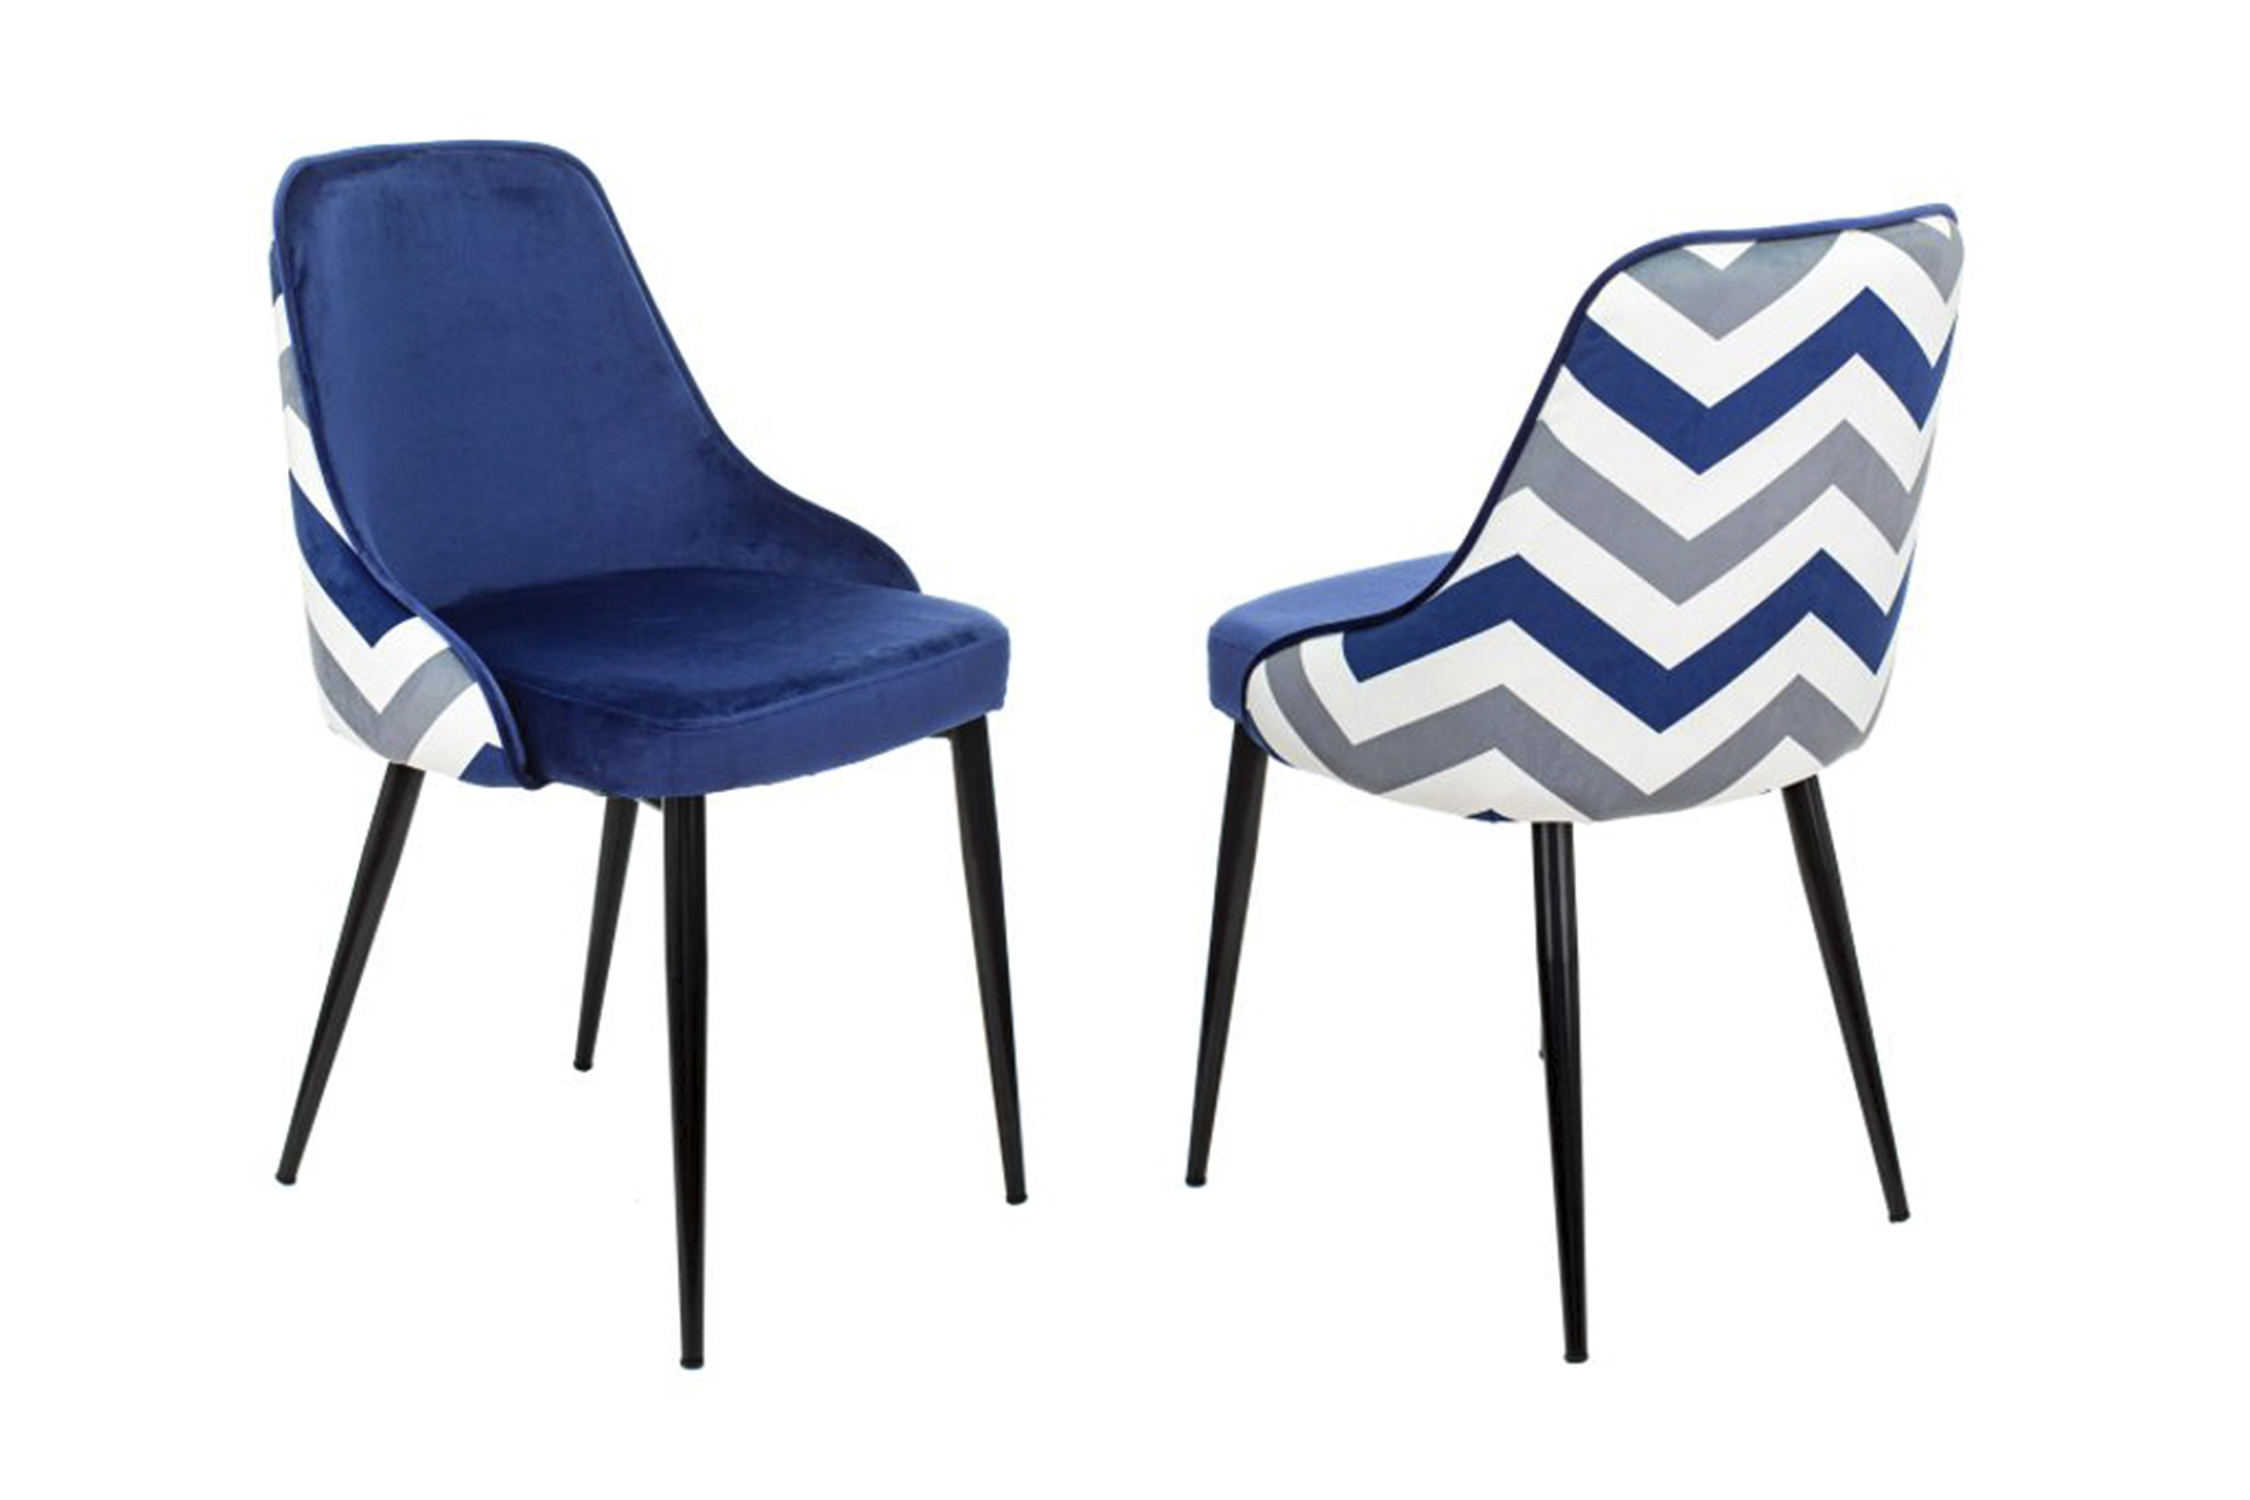 Комплект стульев для кухни Бюрократ KF-5 зигзаг / темно-синий